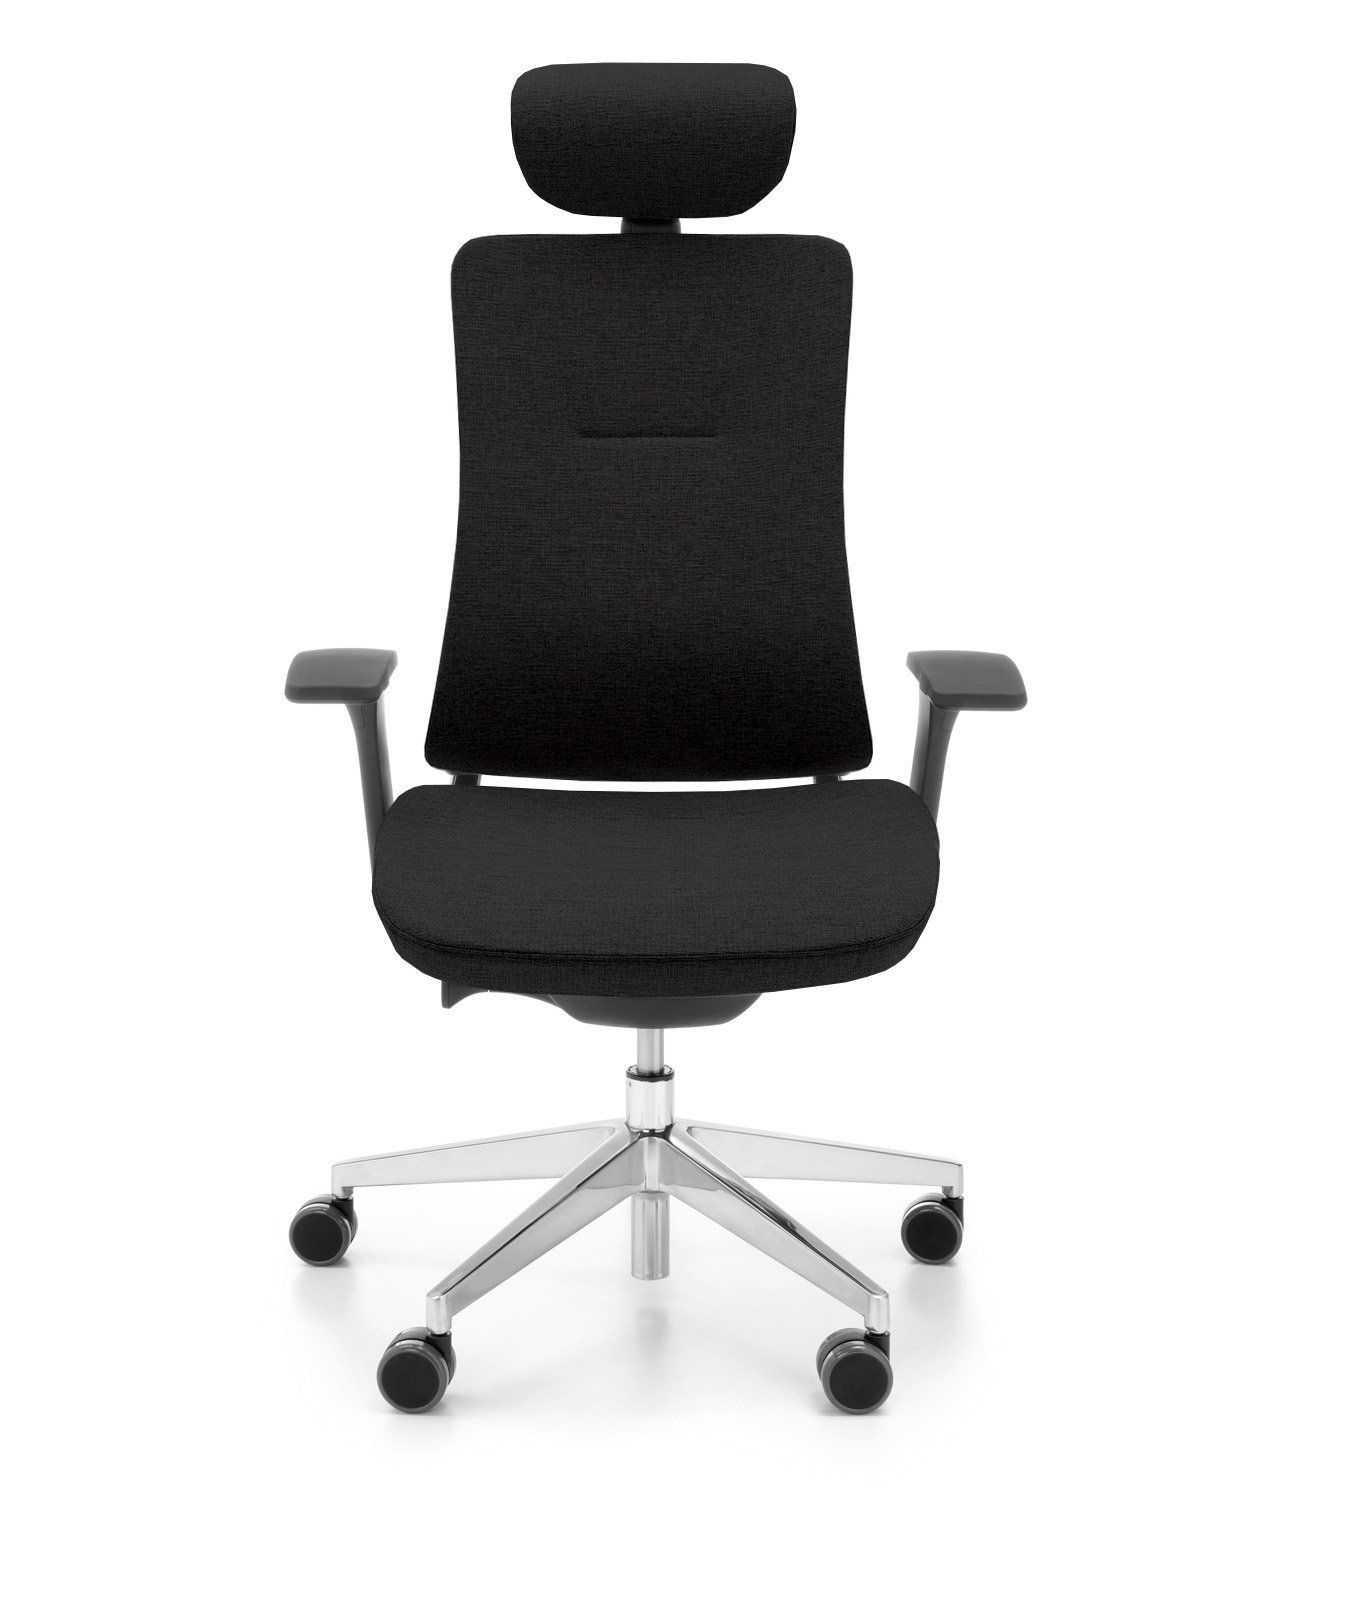 Fotel biurowy Violle 131 SFL to wyjątkowo wygodne i stylowe rozwiązanie dla każdego biura lub miejsca pracy. Ten ergonomiczny fotel oferuje wiele funkcji i cech, które zapewniają komfort i wsparcie przez długie godziny pracy. Jedną z głównych cech fotela Violle 131 SFL jest jego ergonomiczne projektowanie, które zapewnia odpowiednie ułożenie ciała i zapobiega napięciu mięśni oraz problemom zdrowotnym związanym z długotrwałym siedzeniem. Posiada regulację wysokości, umożliwiając dopasowanie fotela do indywidualnych preferencji użytkownika oraz do wysokości biurka.